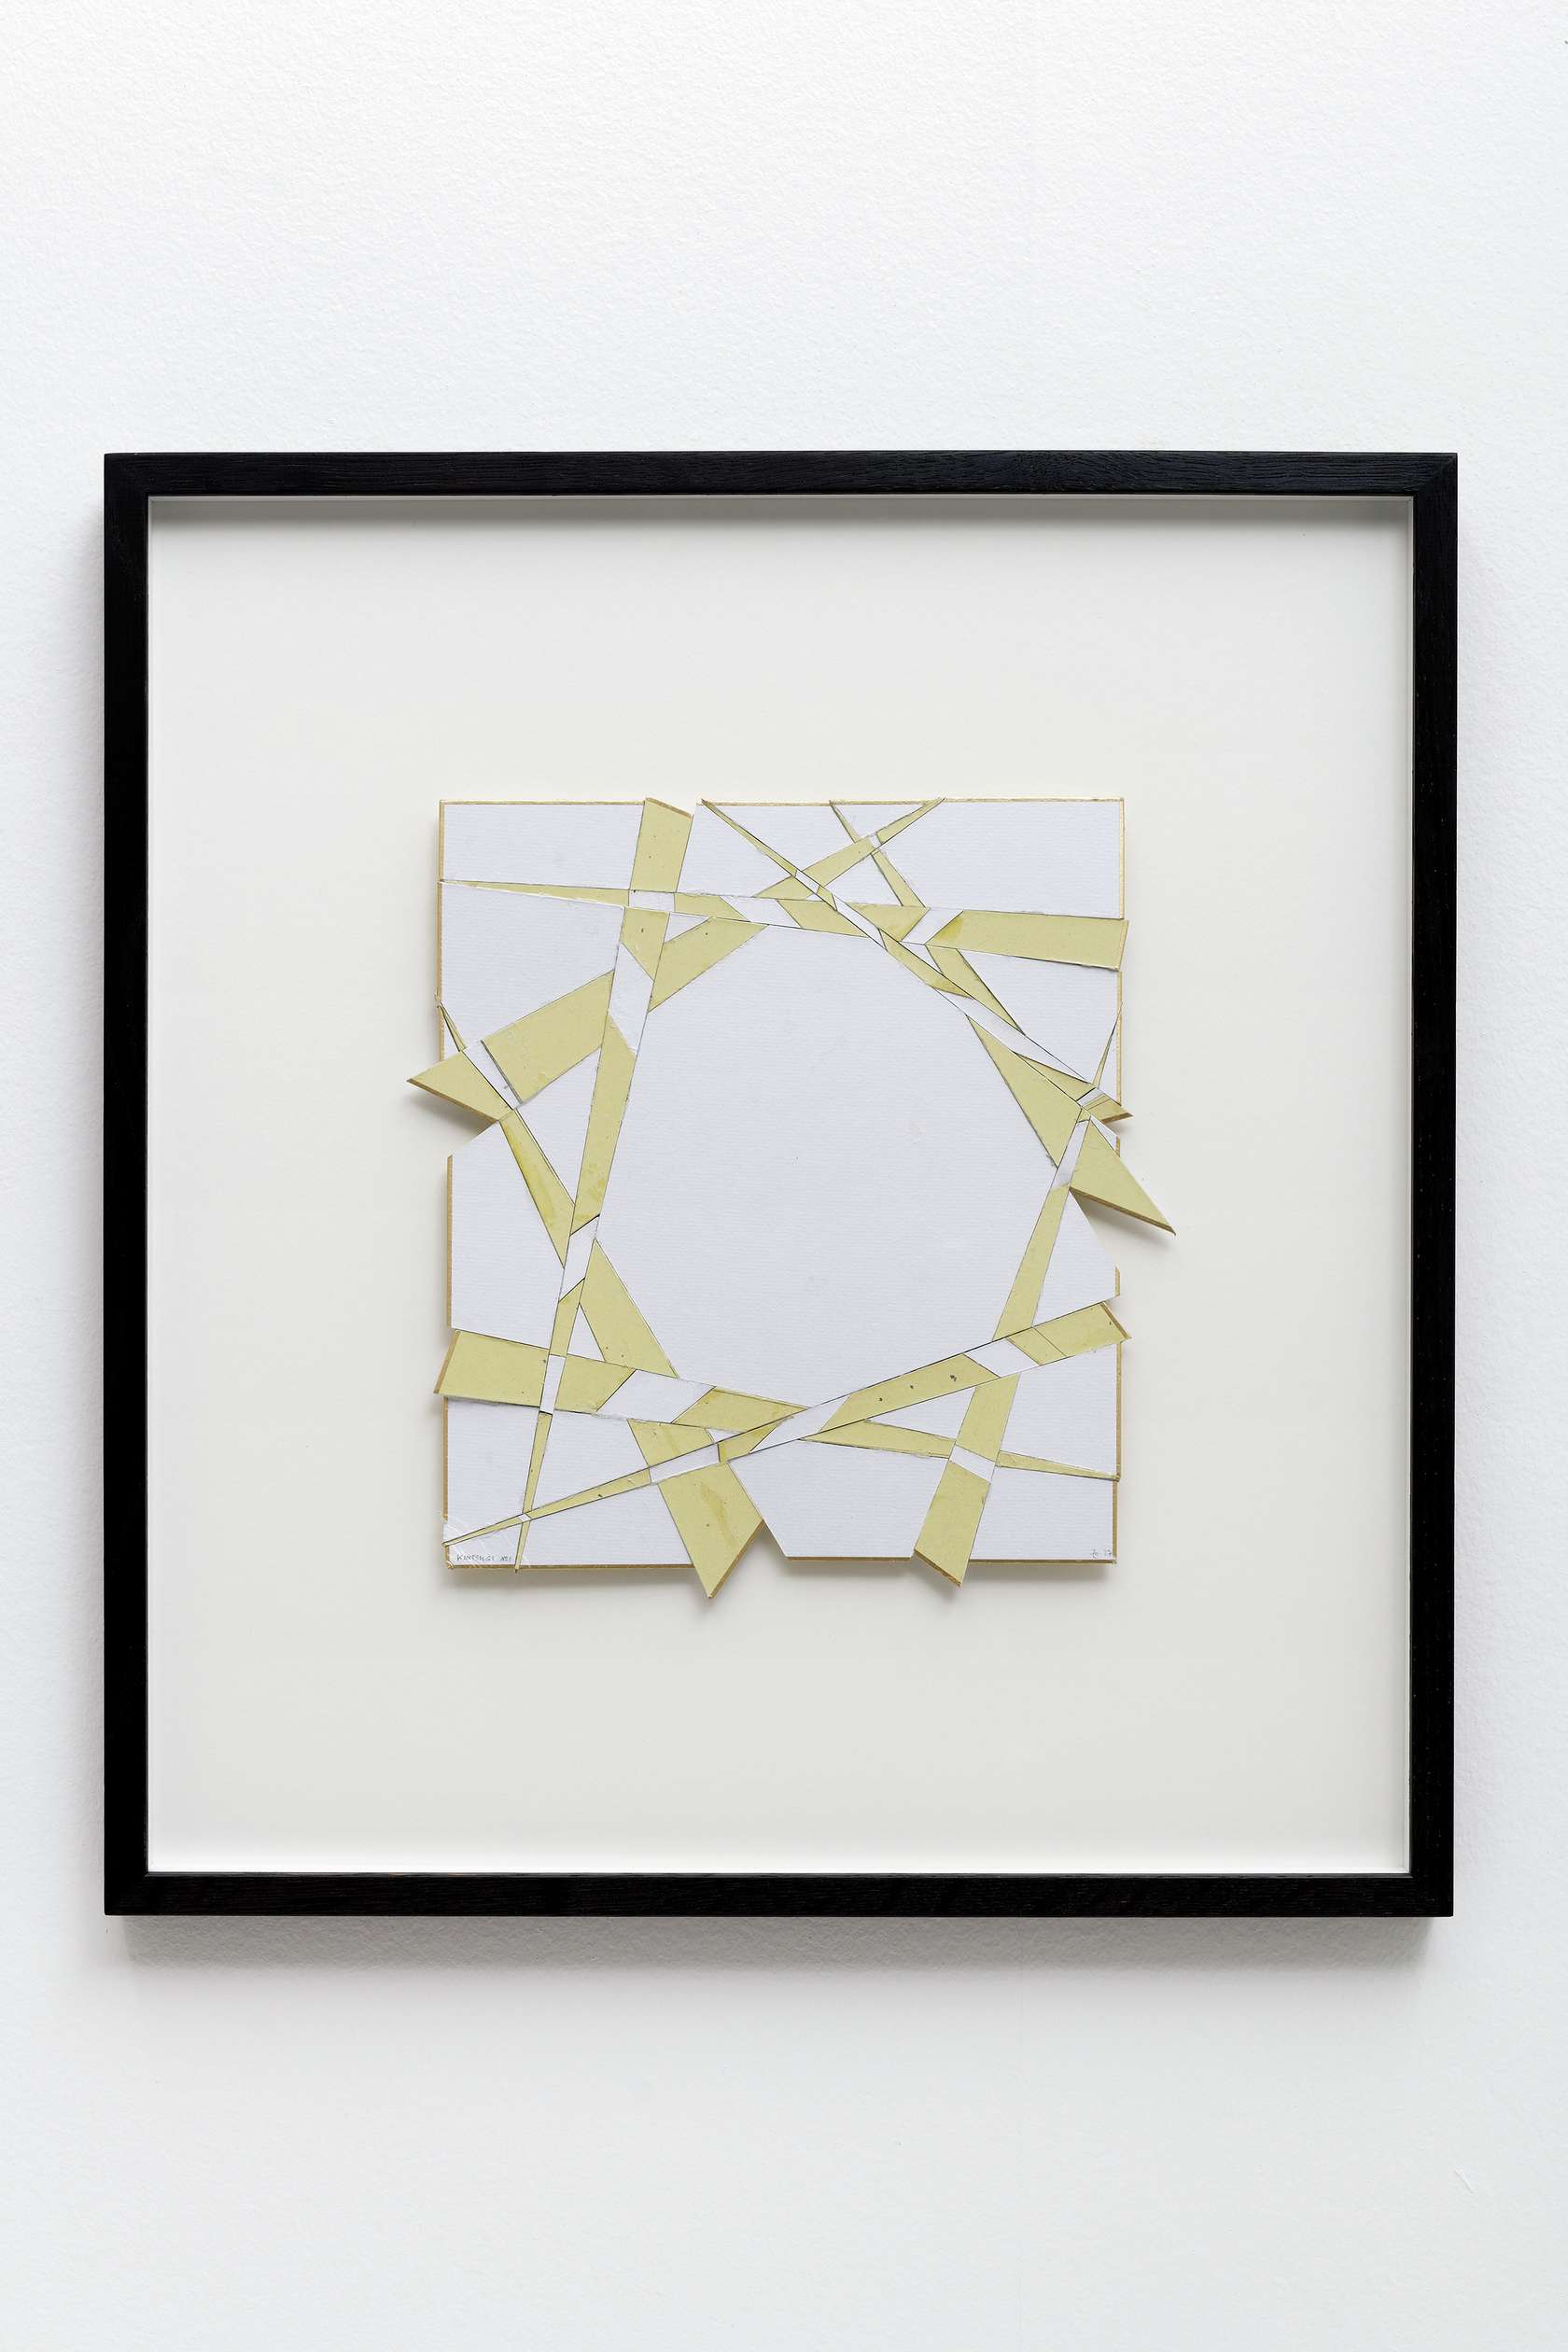 Beat Zoderer, Kintsugi N°1, 2017 Collage de papier Japon et carton22.7 × 14.8 cm / 8 7/8 × 5 7/8 in.